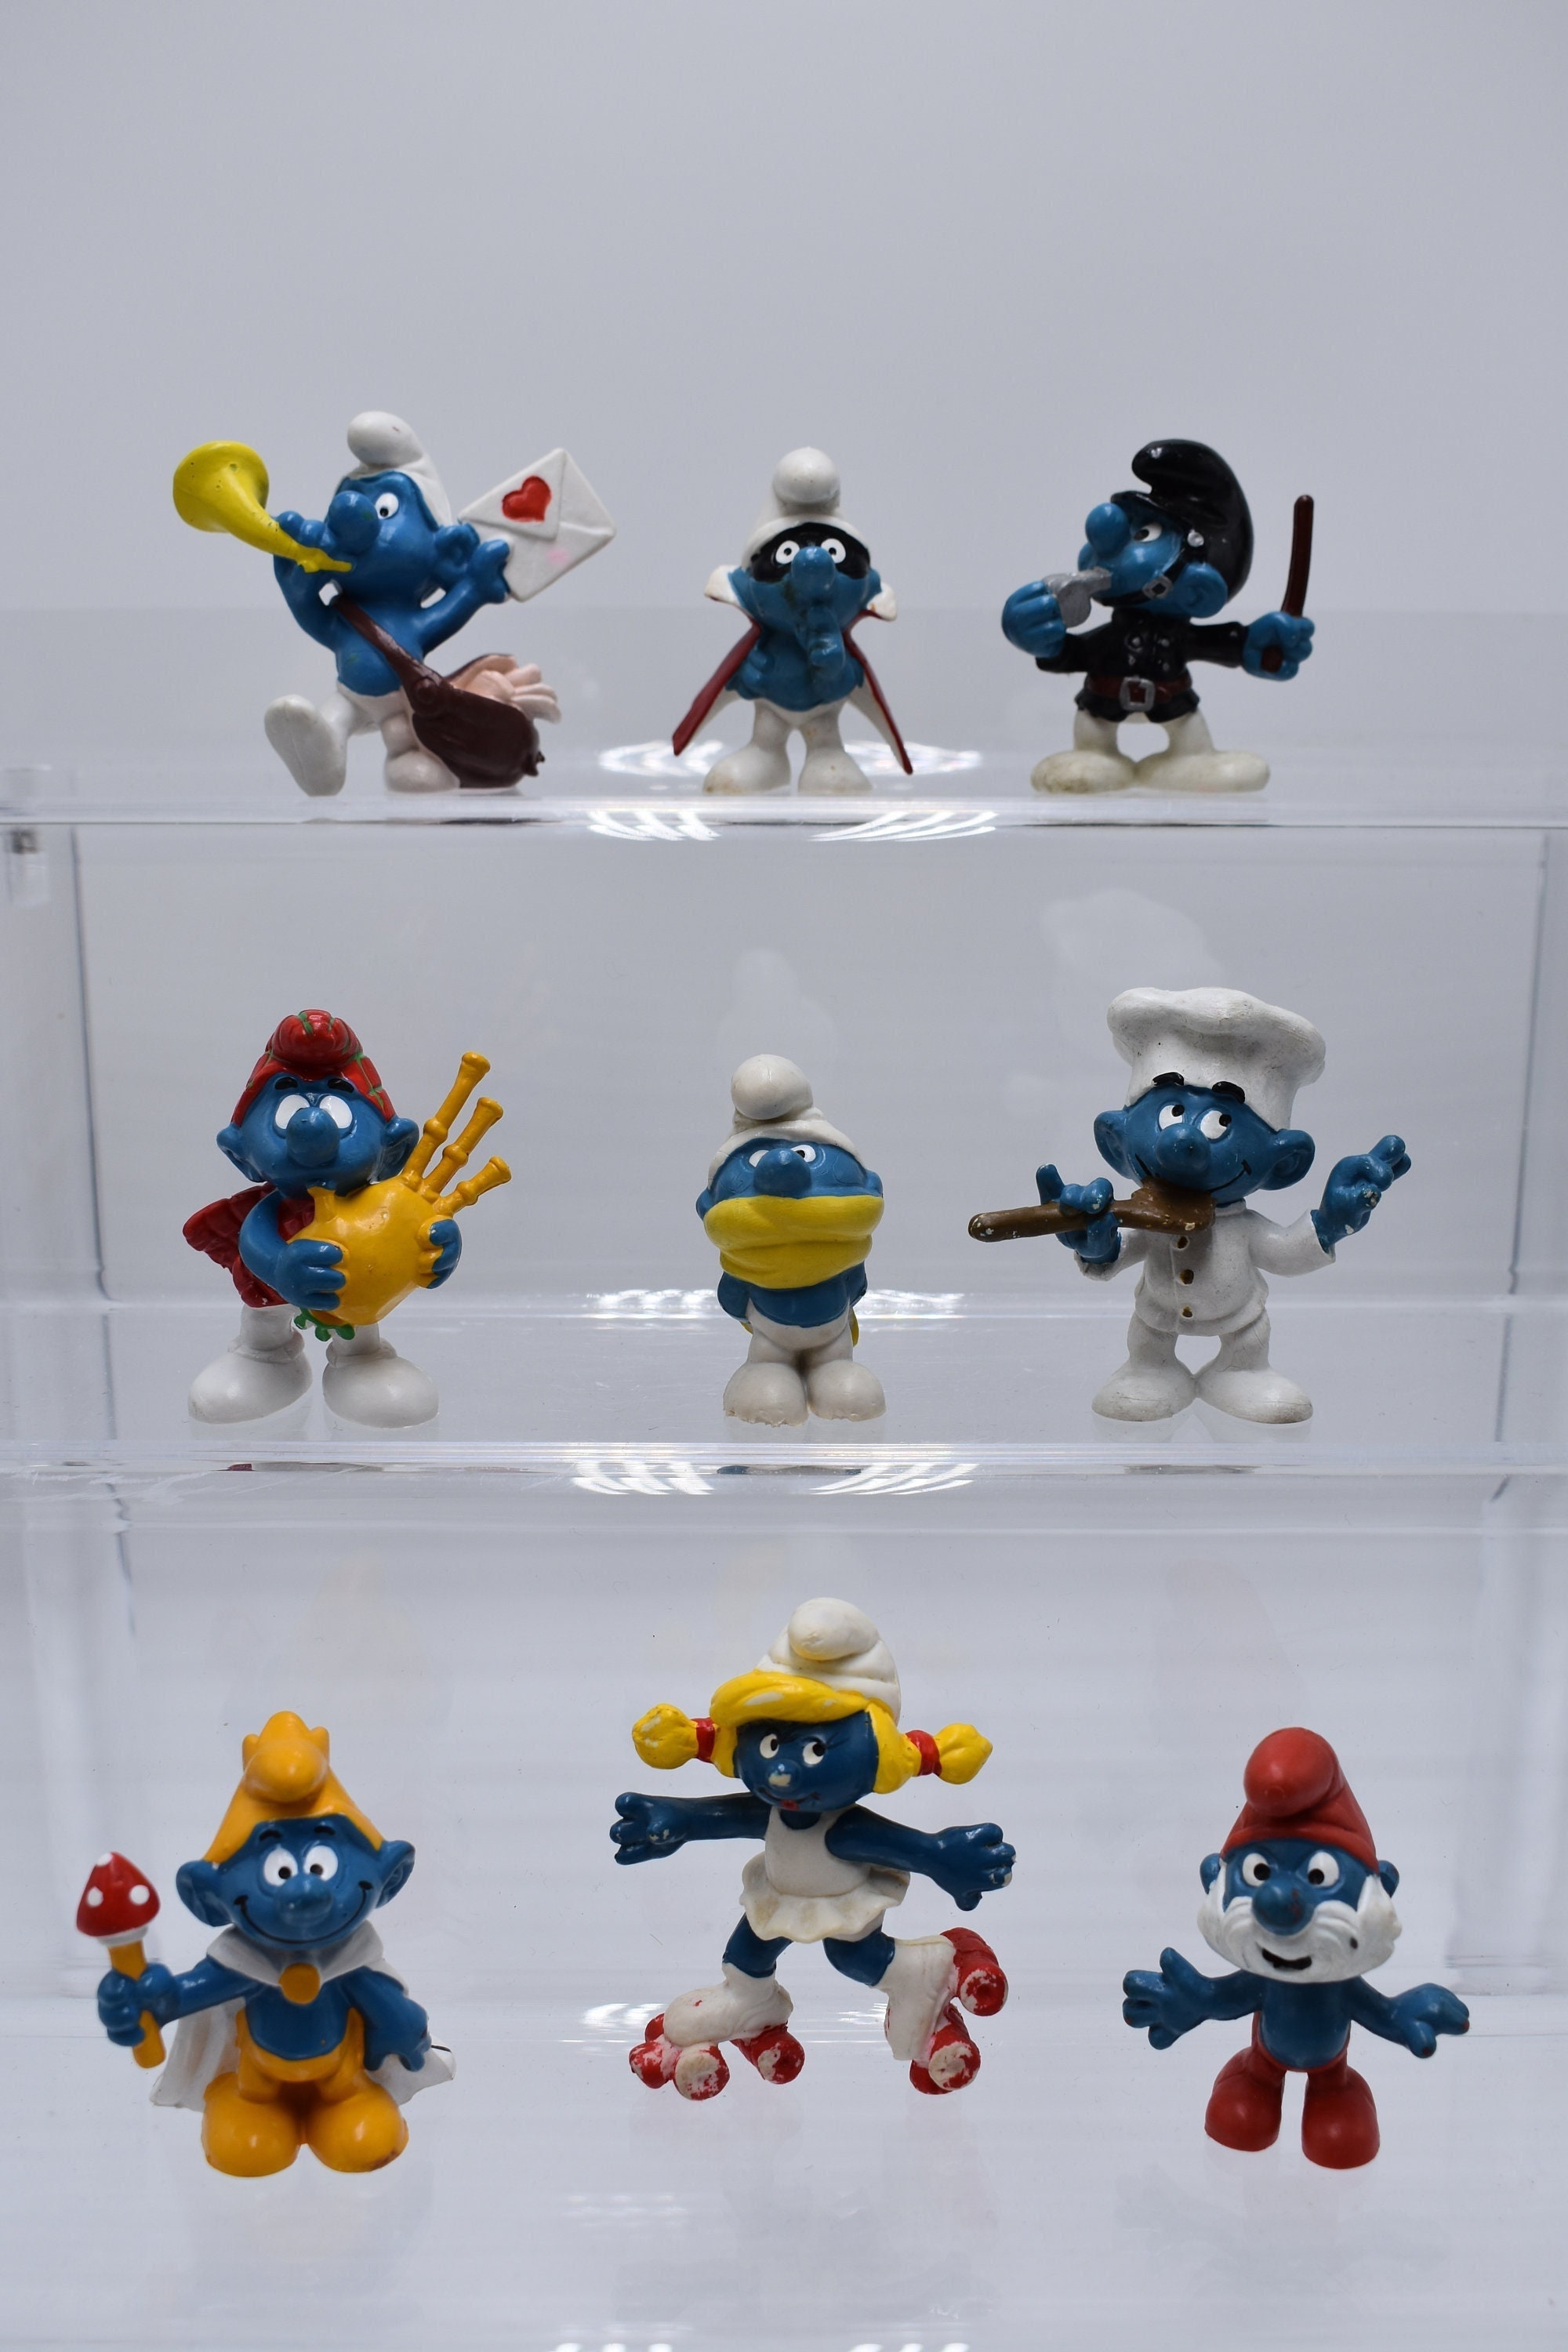 Peyo Smurf Figurines, Vintage Bully Smurfs, Peyo 70's 80's Smurf Figurines  